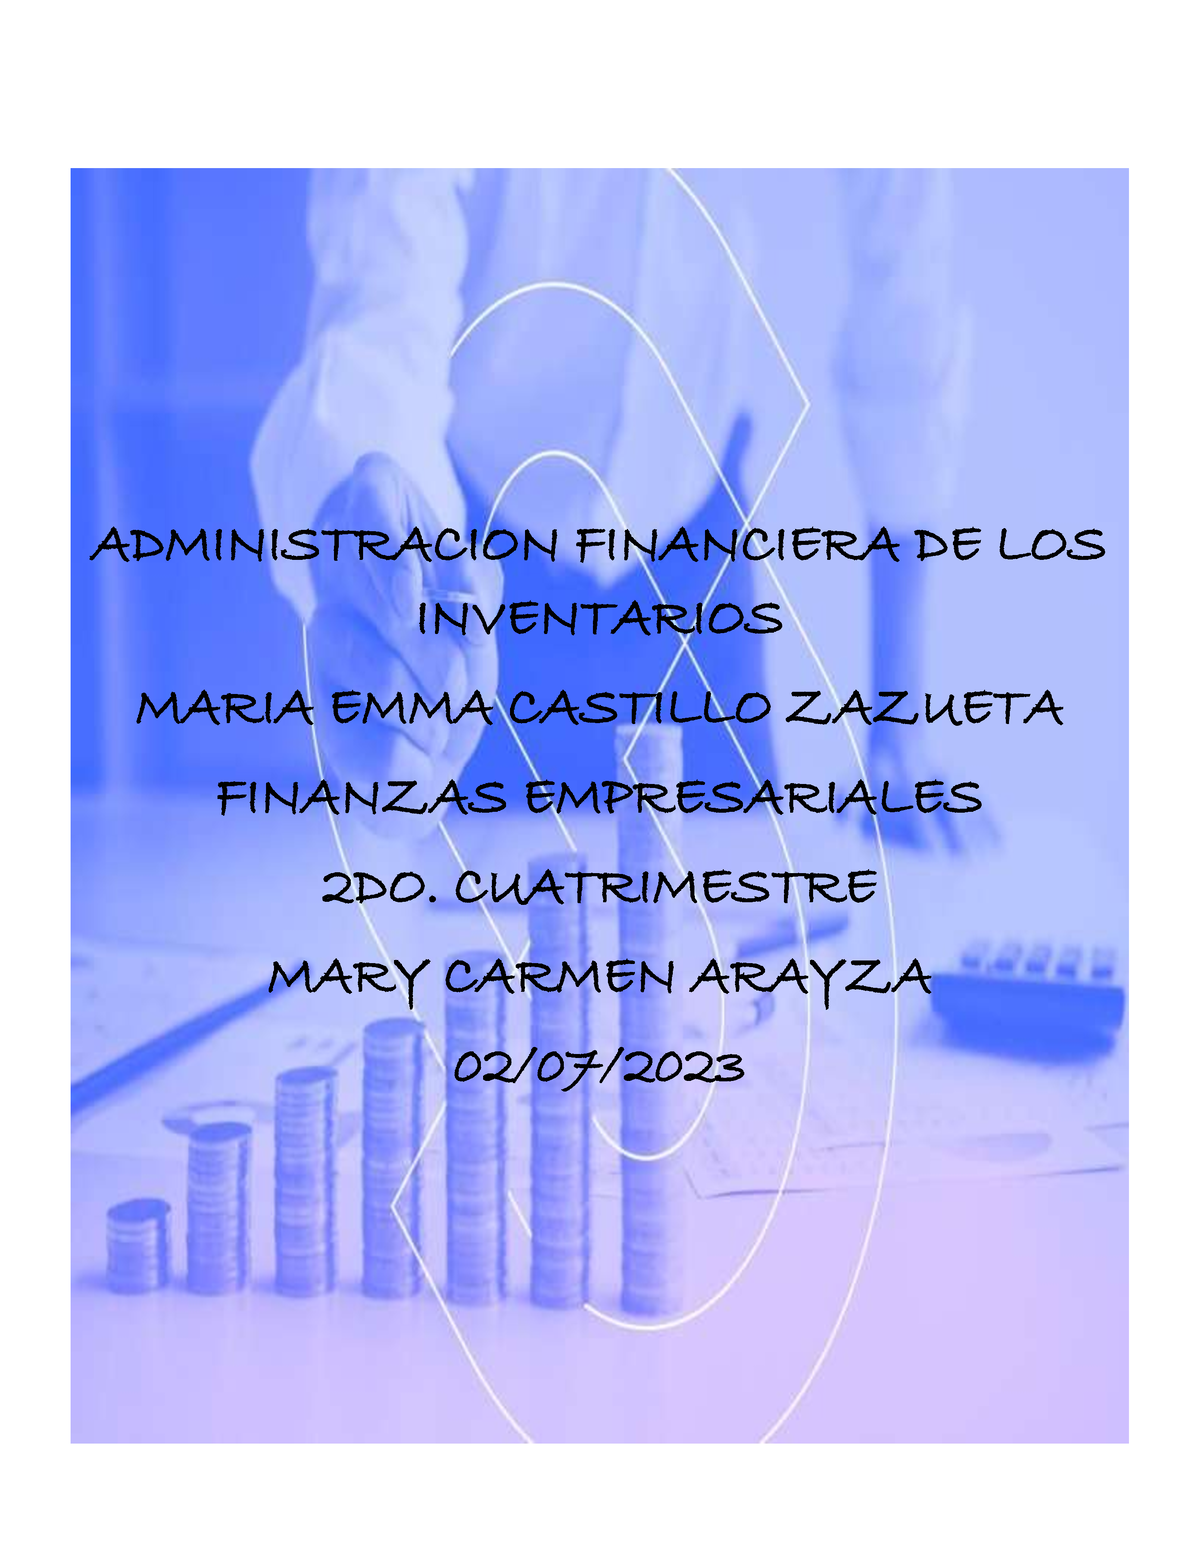 Finanzas Empresariales Administracion Financiera De Los Inventarios Maria Emma Castillo 6622